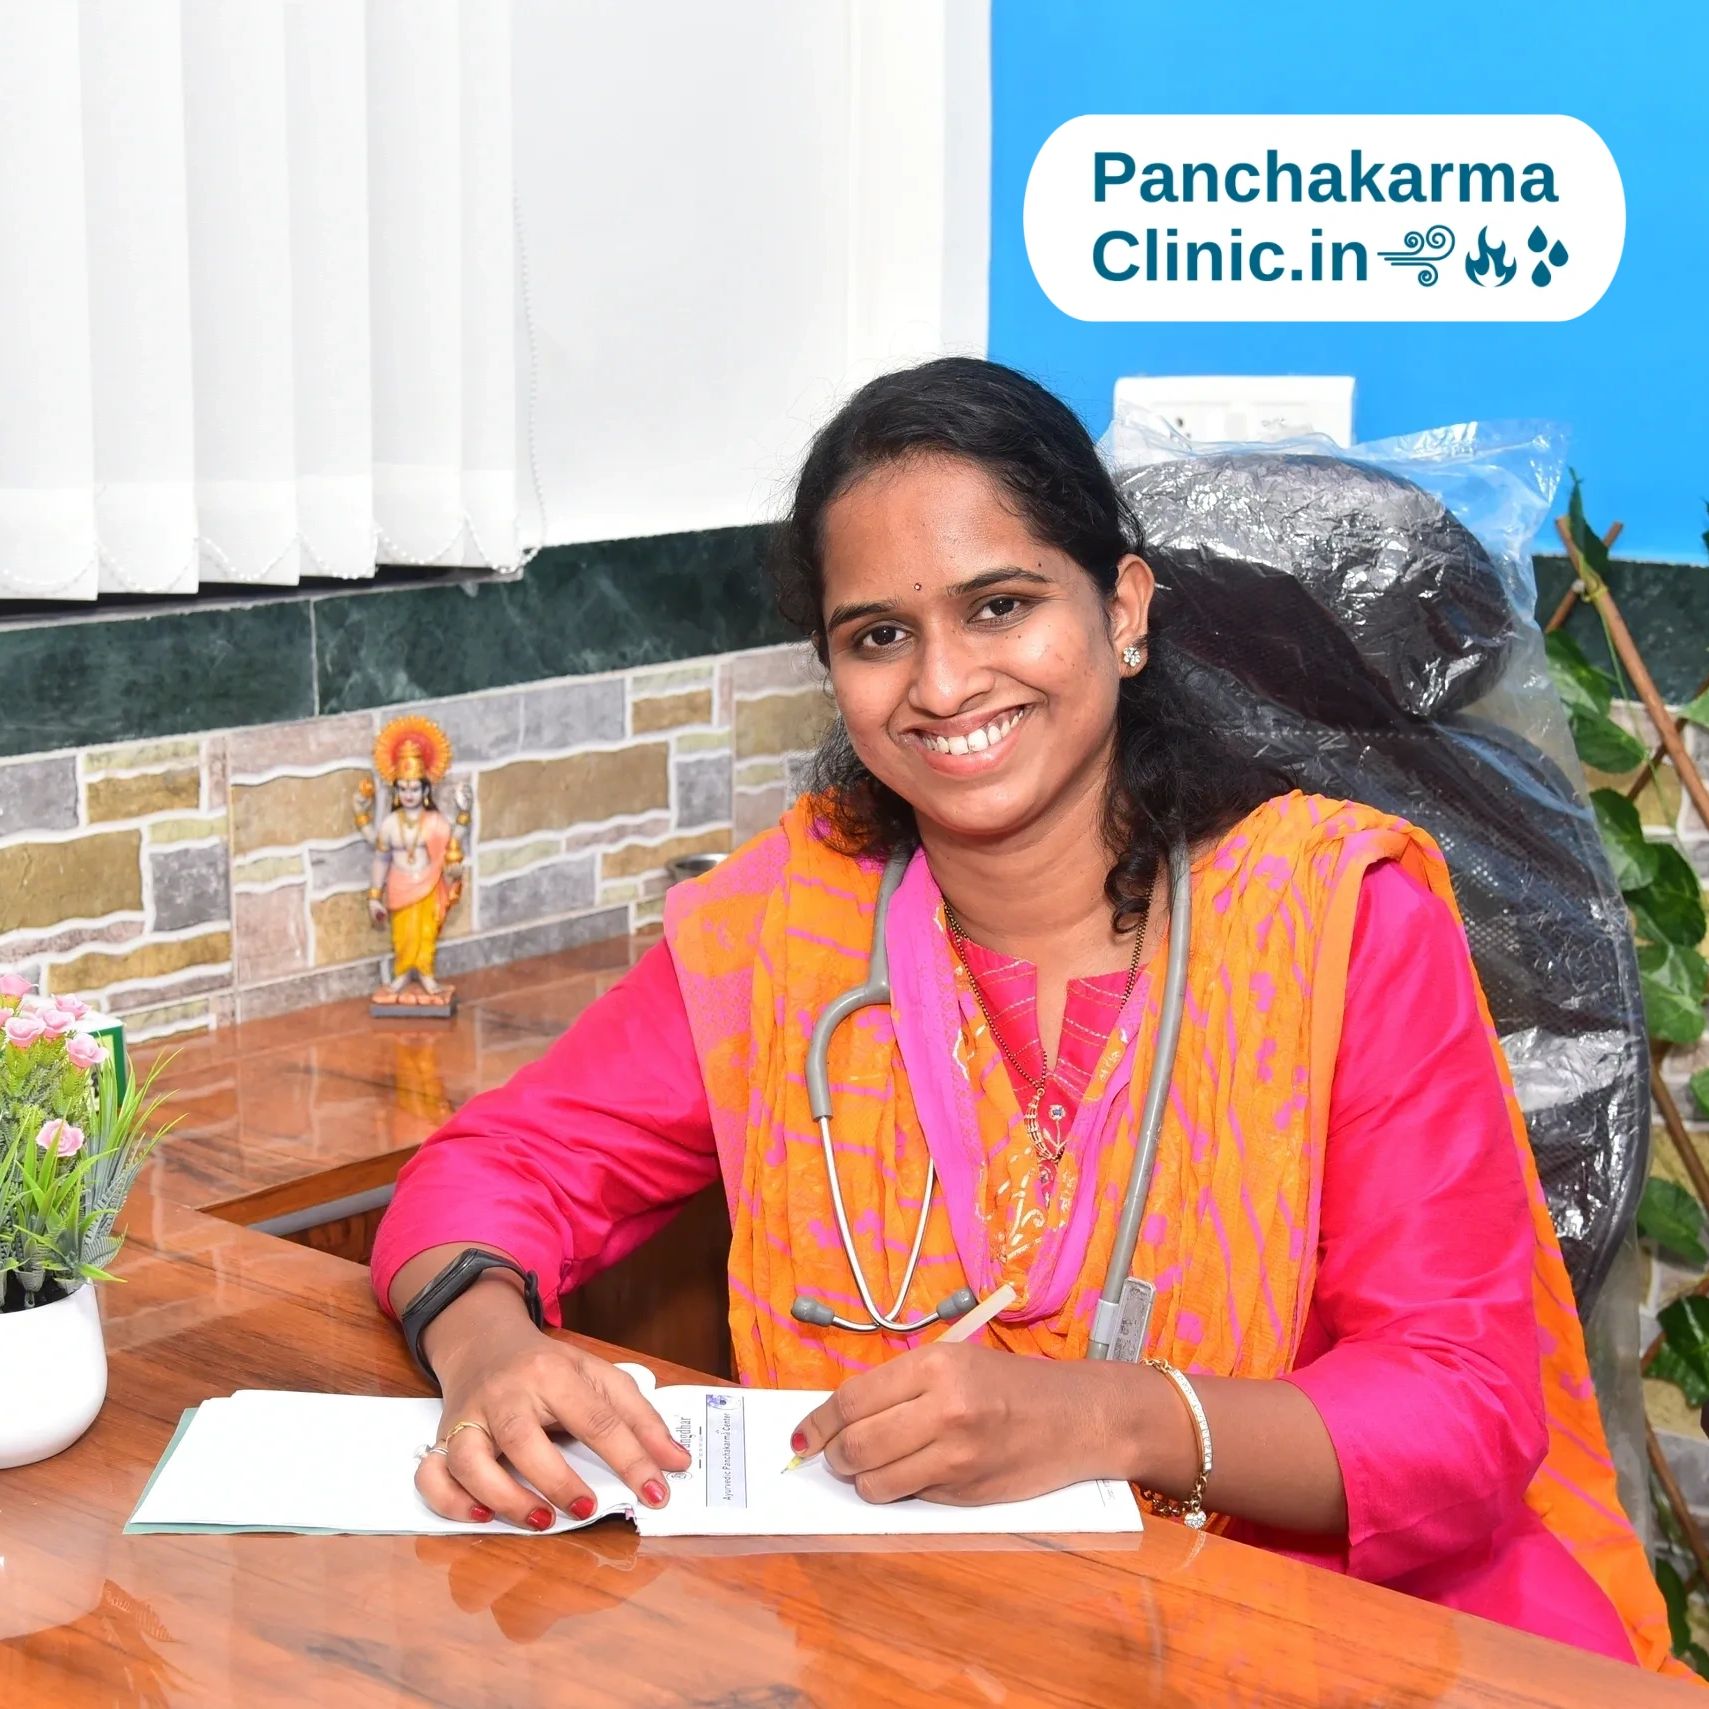 Dr.Girija Kanade, Sharangdhar Ayurvedic Panchakarma Clinic, Vasai